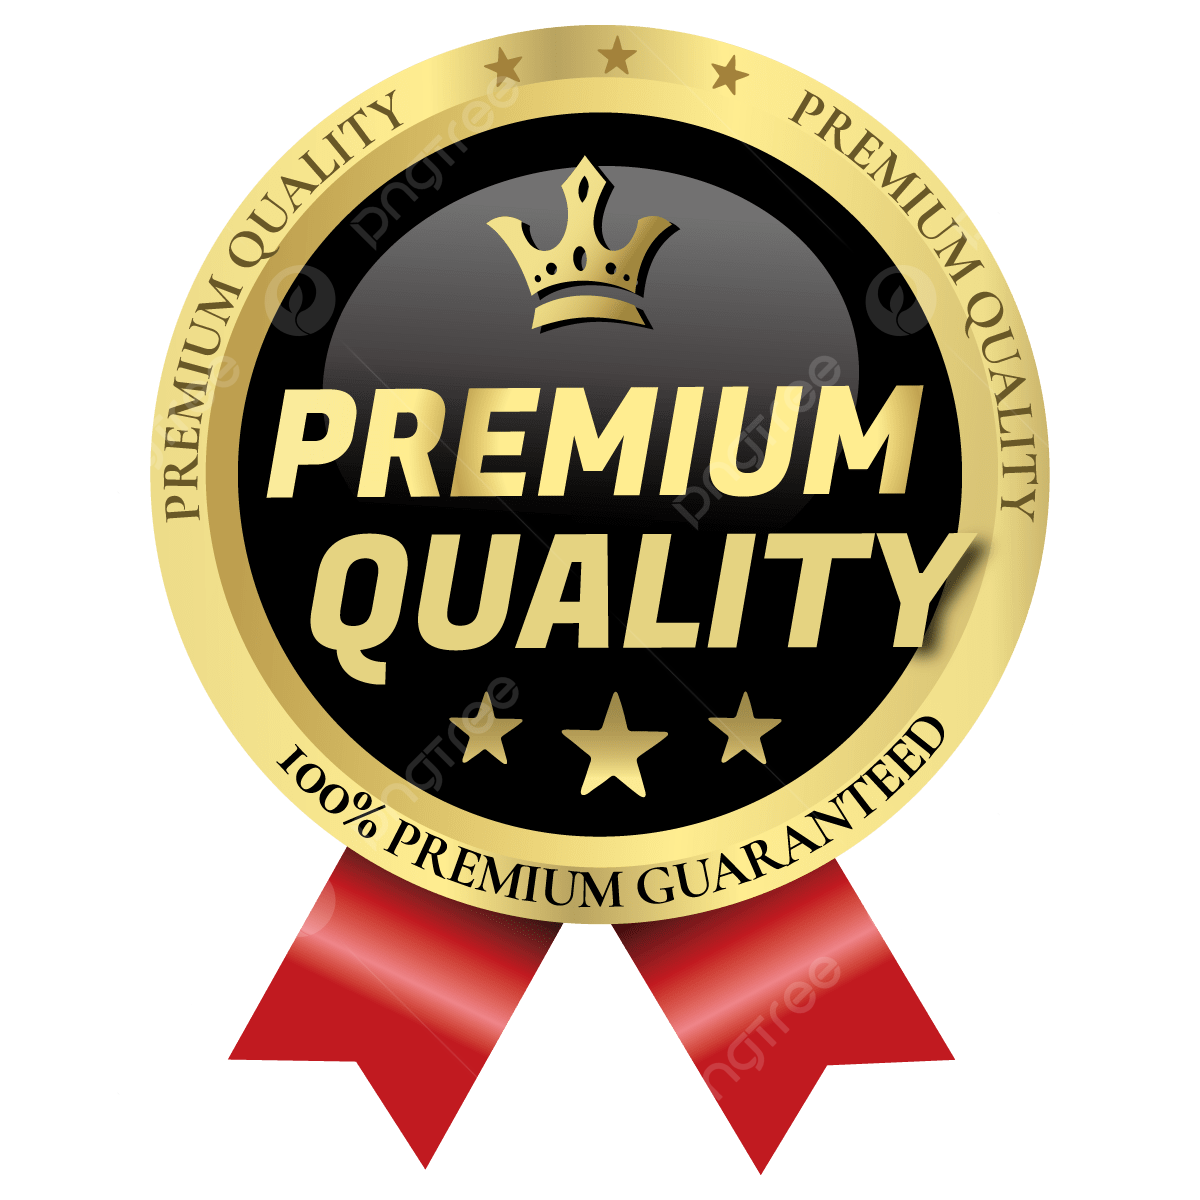 Premium Quality Used Engine